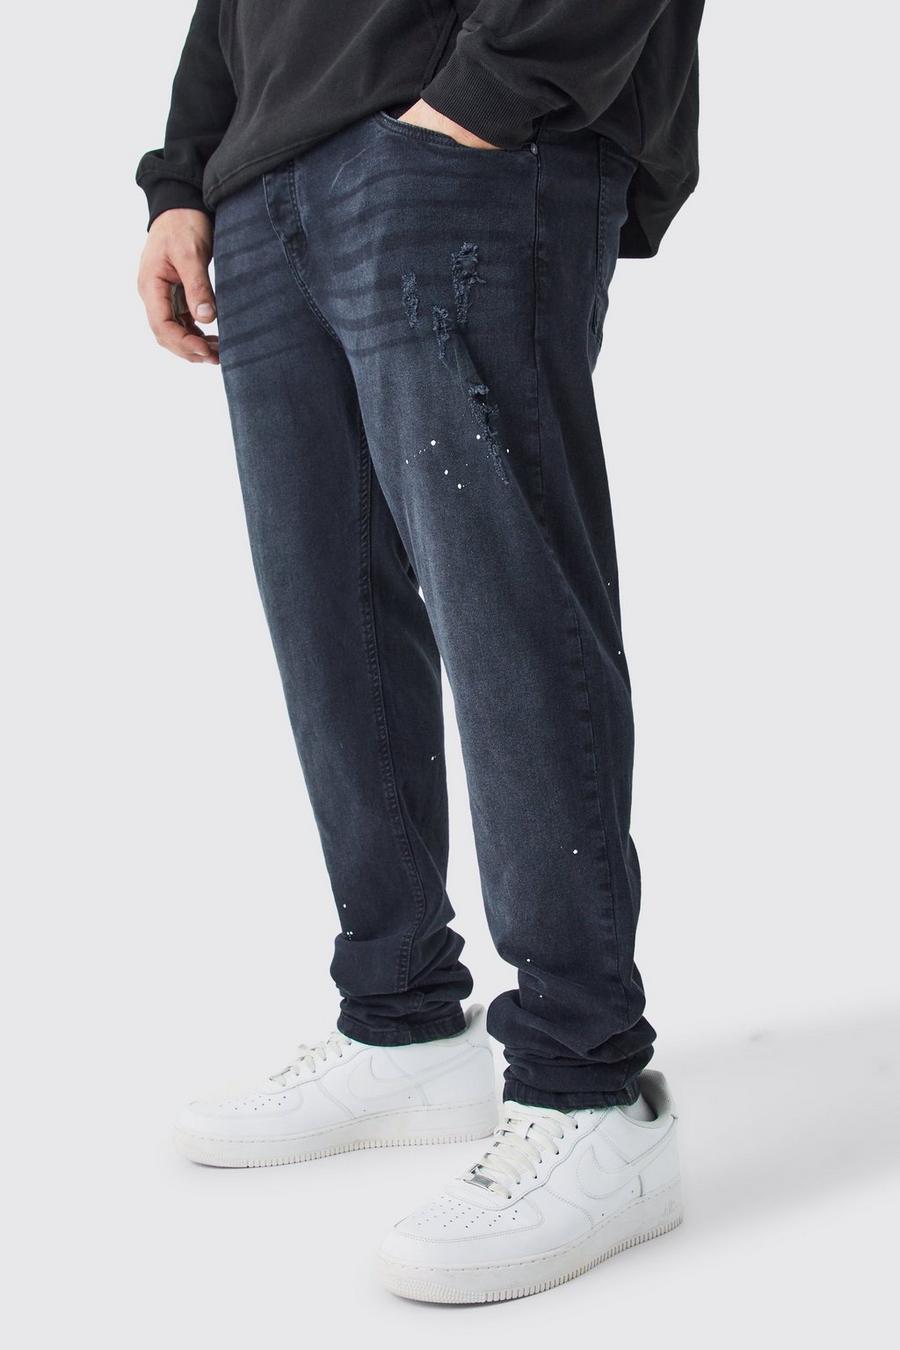 Jeans Plus Size Skinny Fit in denim Stretch con pieghe sul fondo e tinte colorate, Washed black